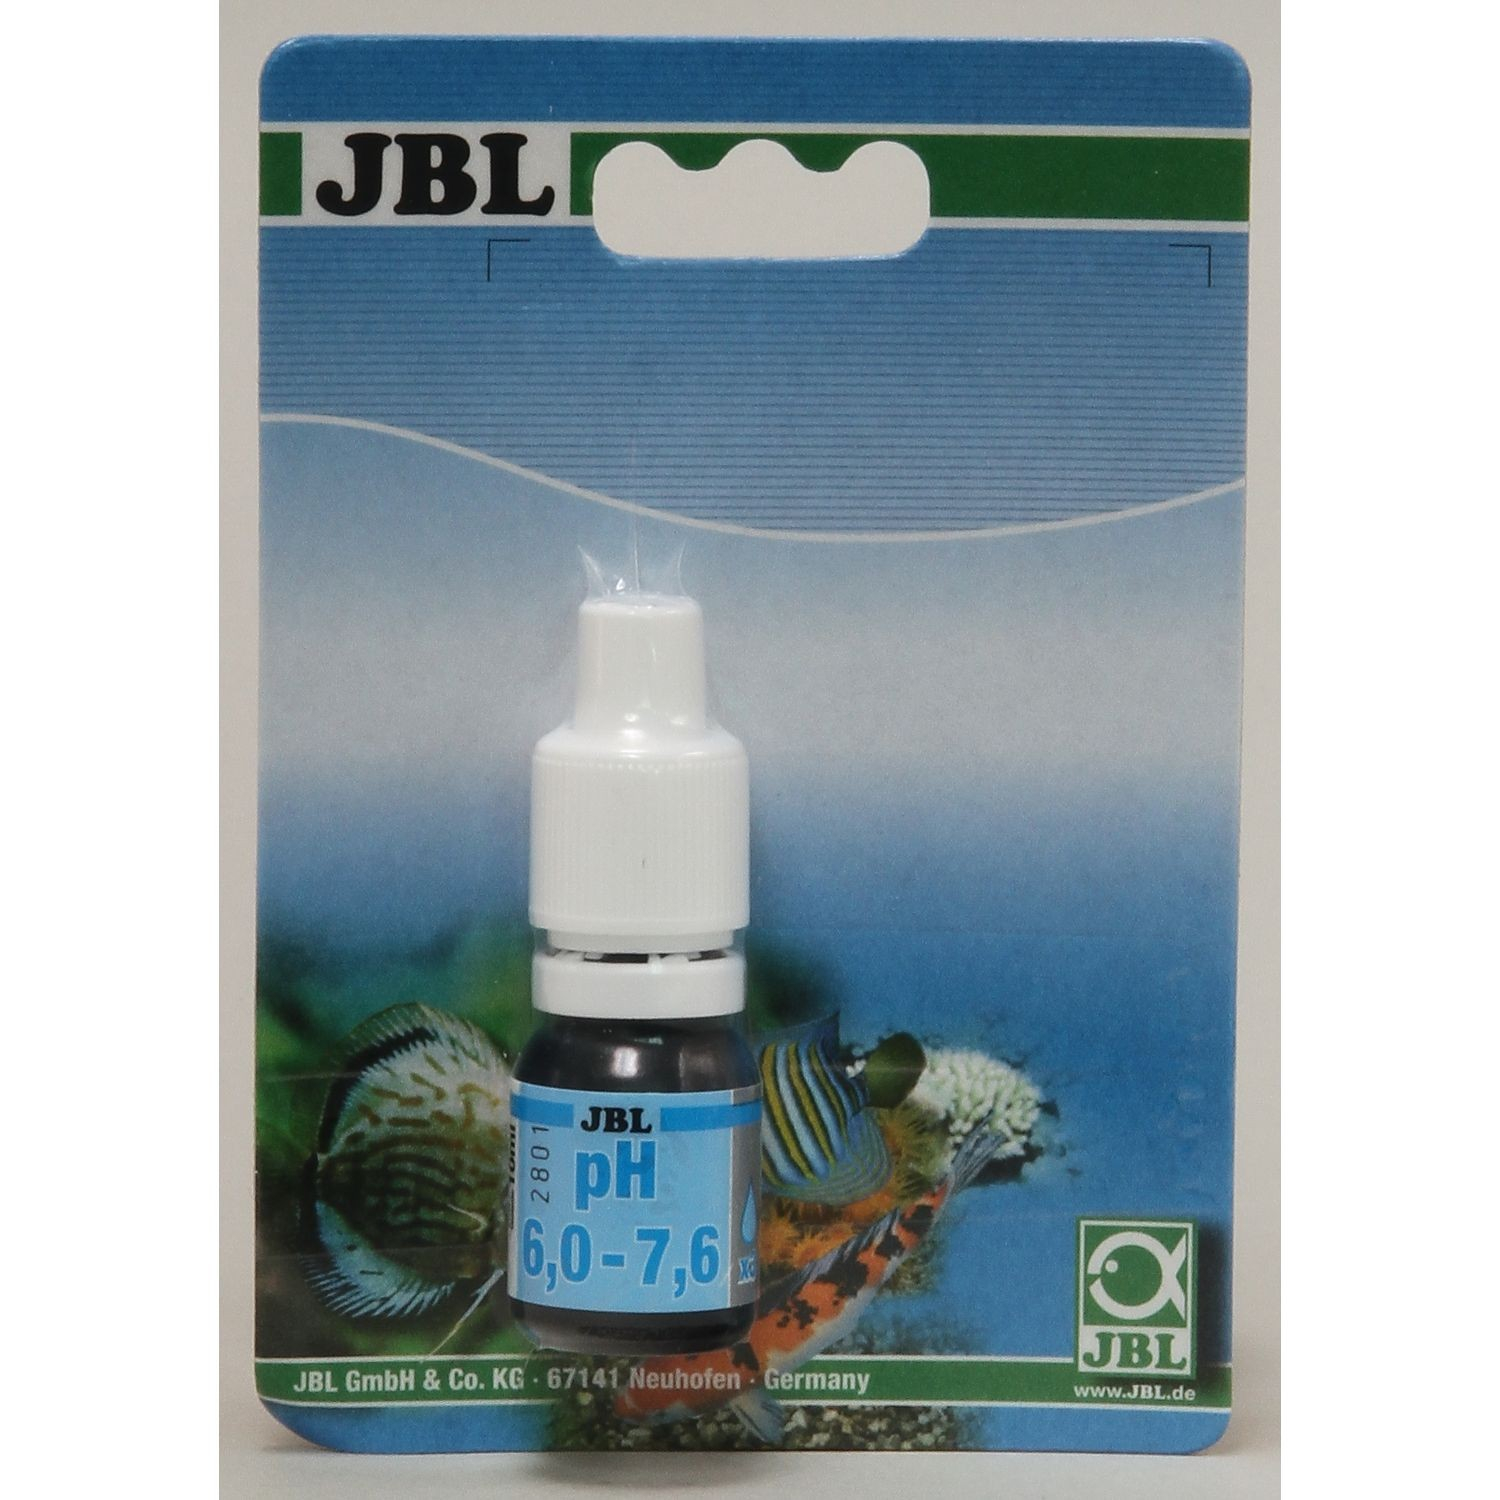 JBL ProAquaTest pH 6.0-7.6